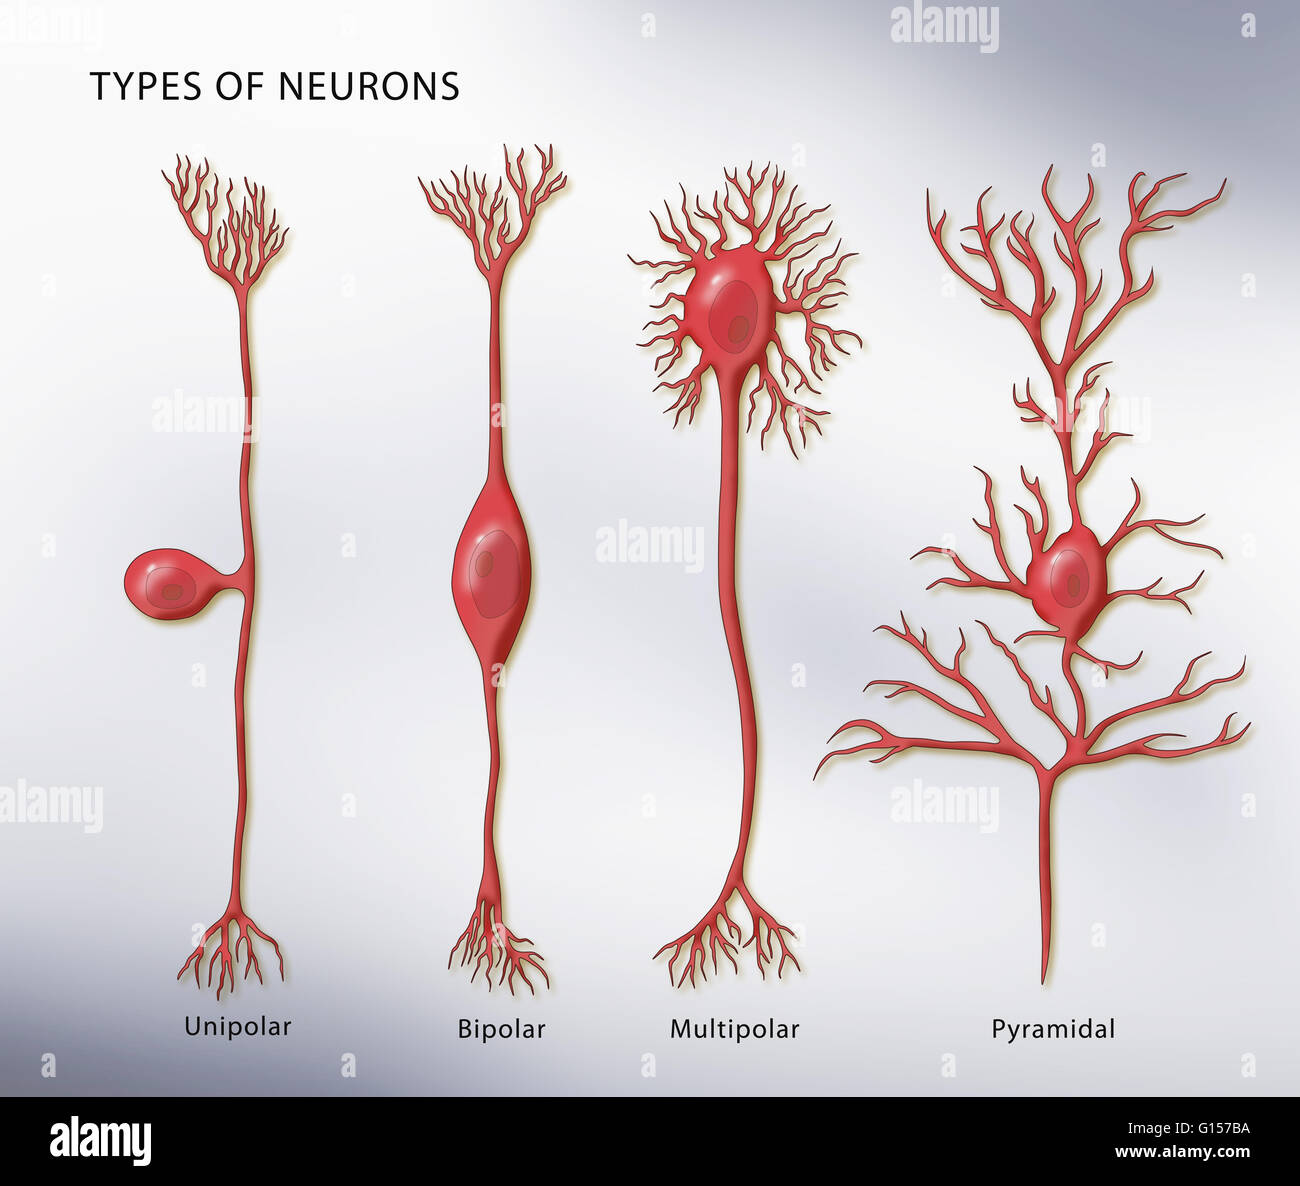 Illustration montrant les 4 types de neurones. De gauche à droite : unipolaire, bipolaire, multipolaire, et pyramidale. Banque D'Images